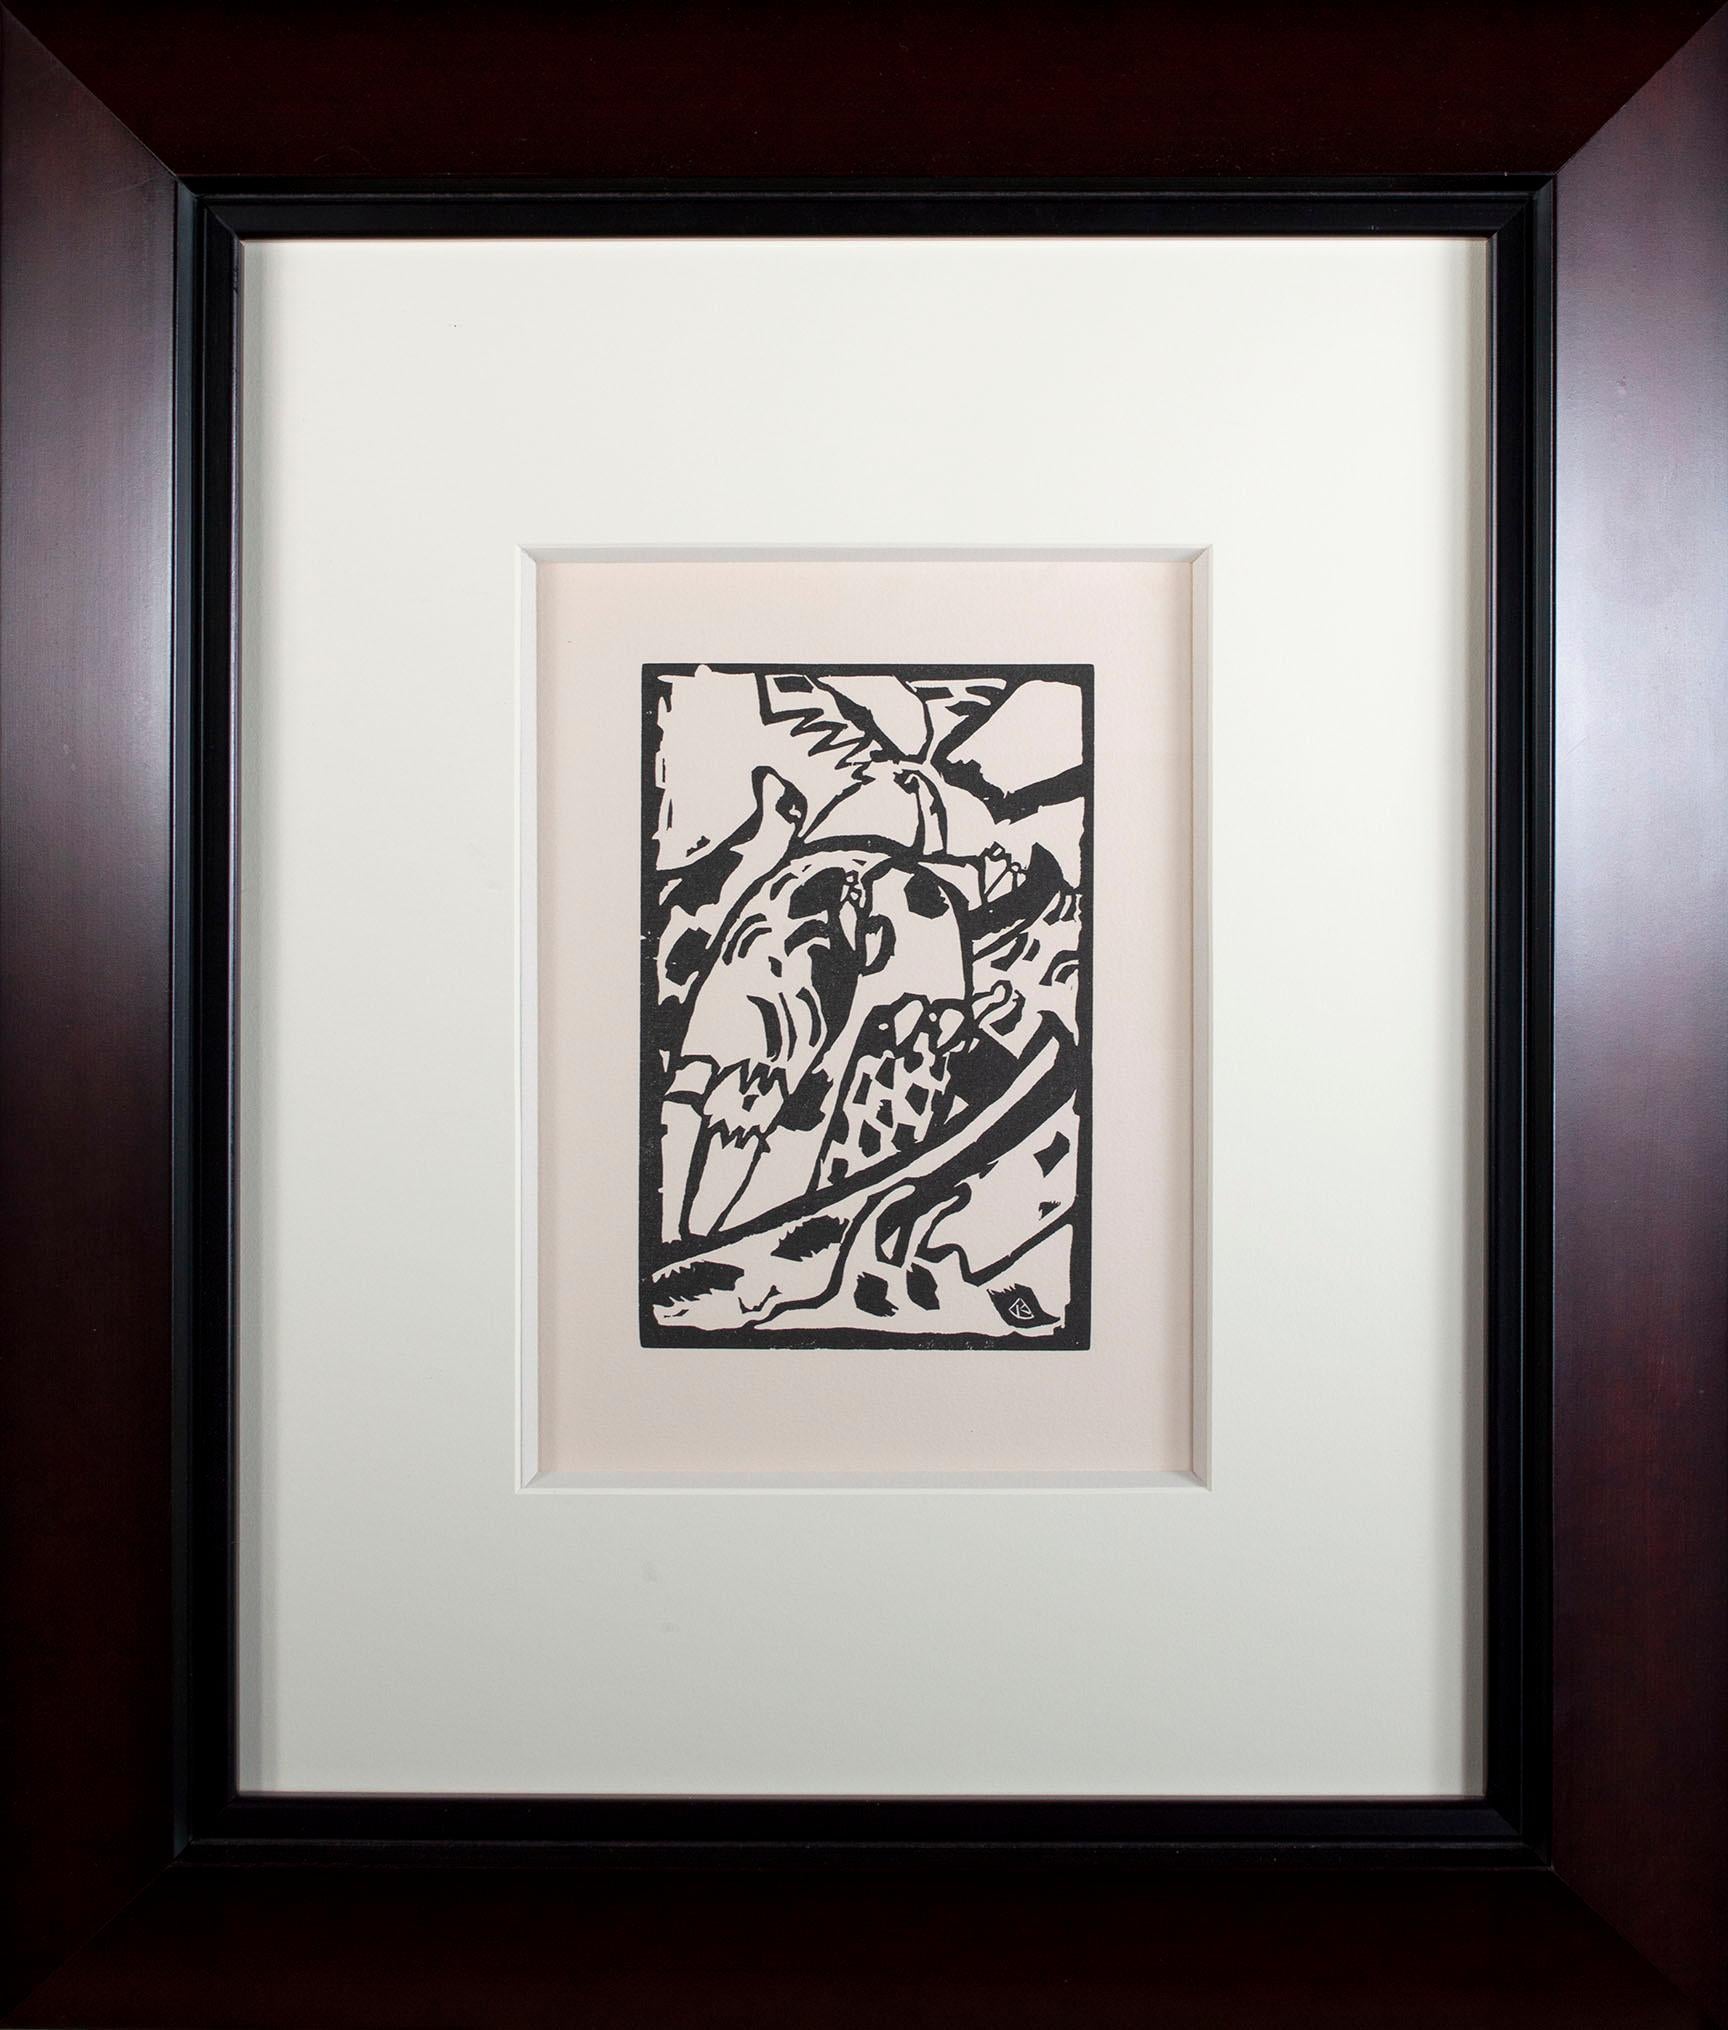 Der Holzschnitt "Improvisation 7", zweite Auflage, aus "Klänge" ist ein Holzschnitt von Wassily Kandinsky. Der vorliegende Holzschnitt stammt aus der zweiten Auflage von "Klänge", einem Buch mit Originalgrafiken und Gedichten von Wassily Kandinsky.